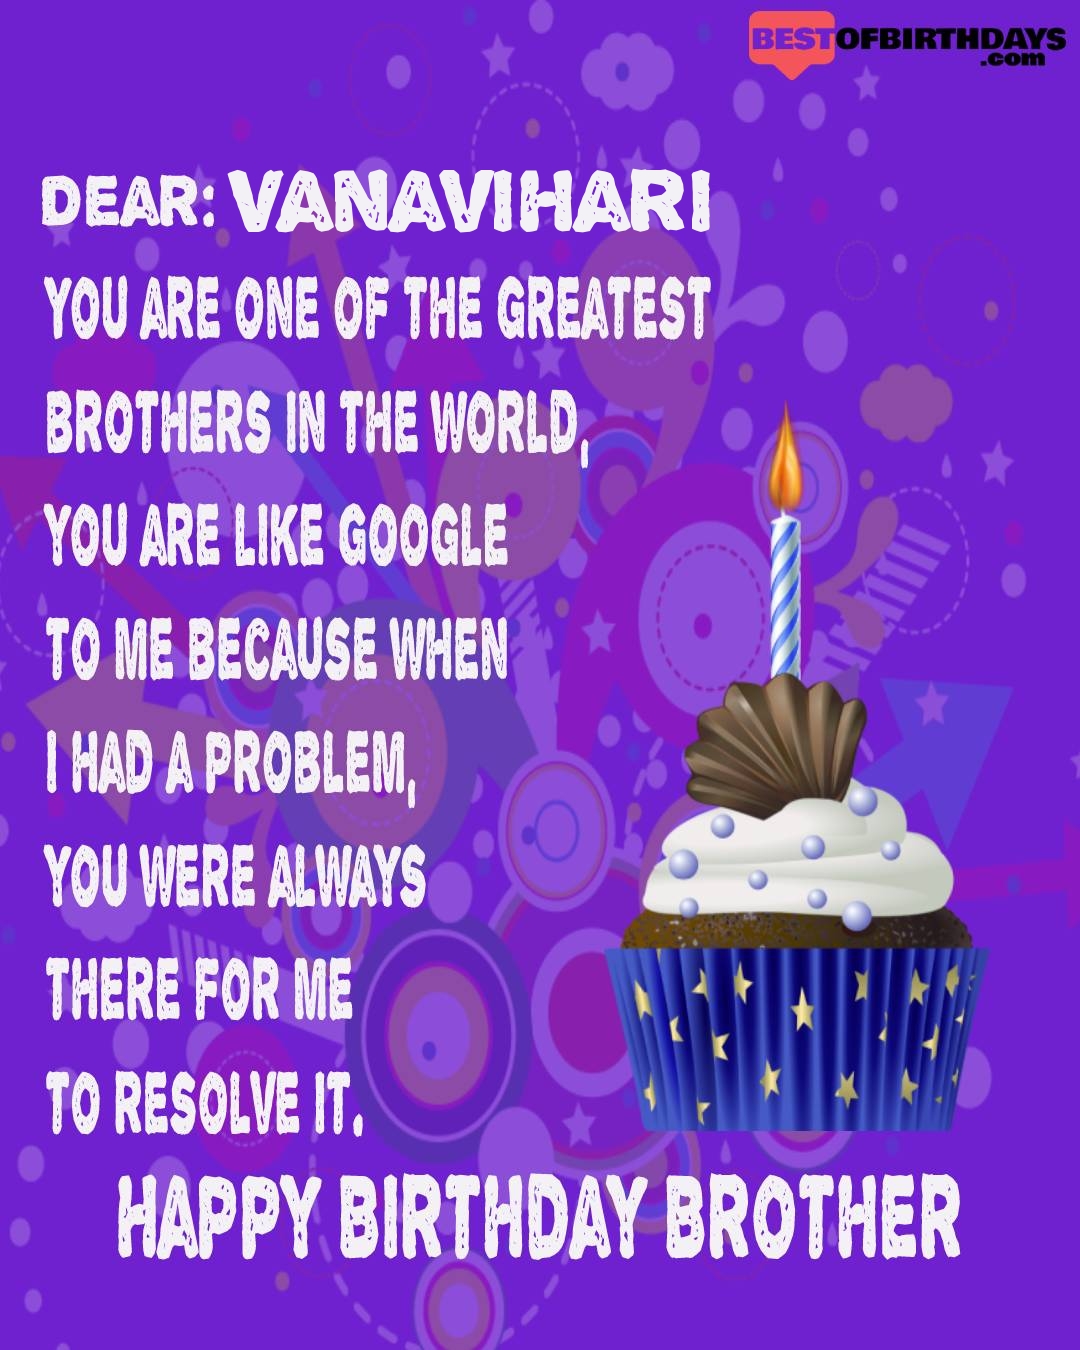 Happy birthday vanavihari bhai brother bro